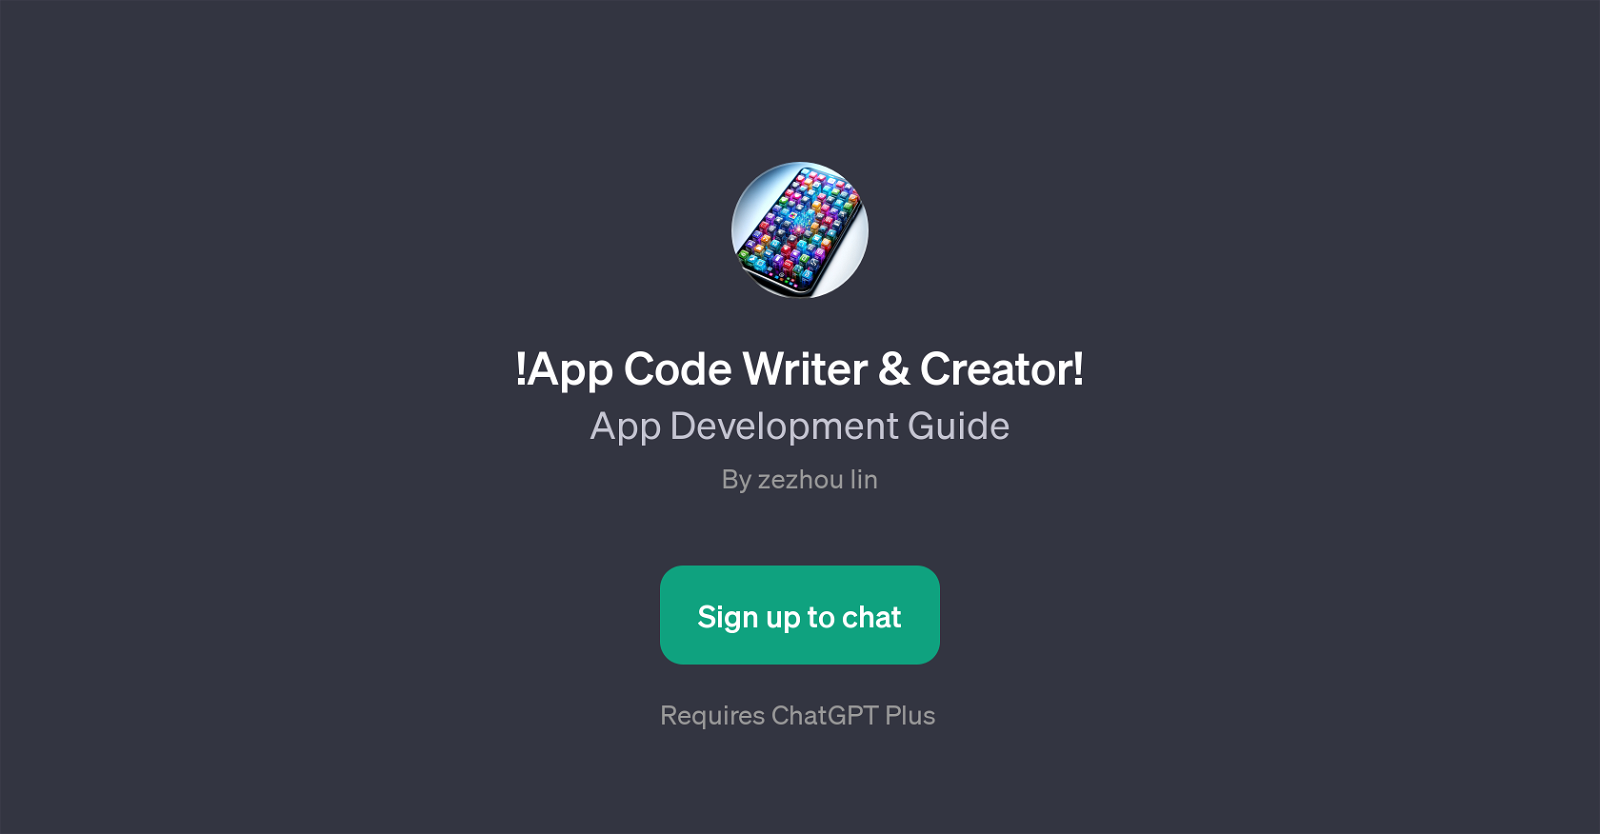 !App Code Writer & Creator! website